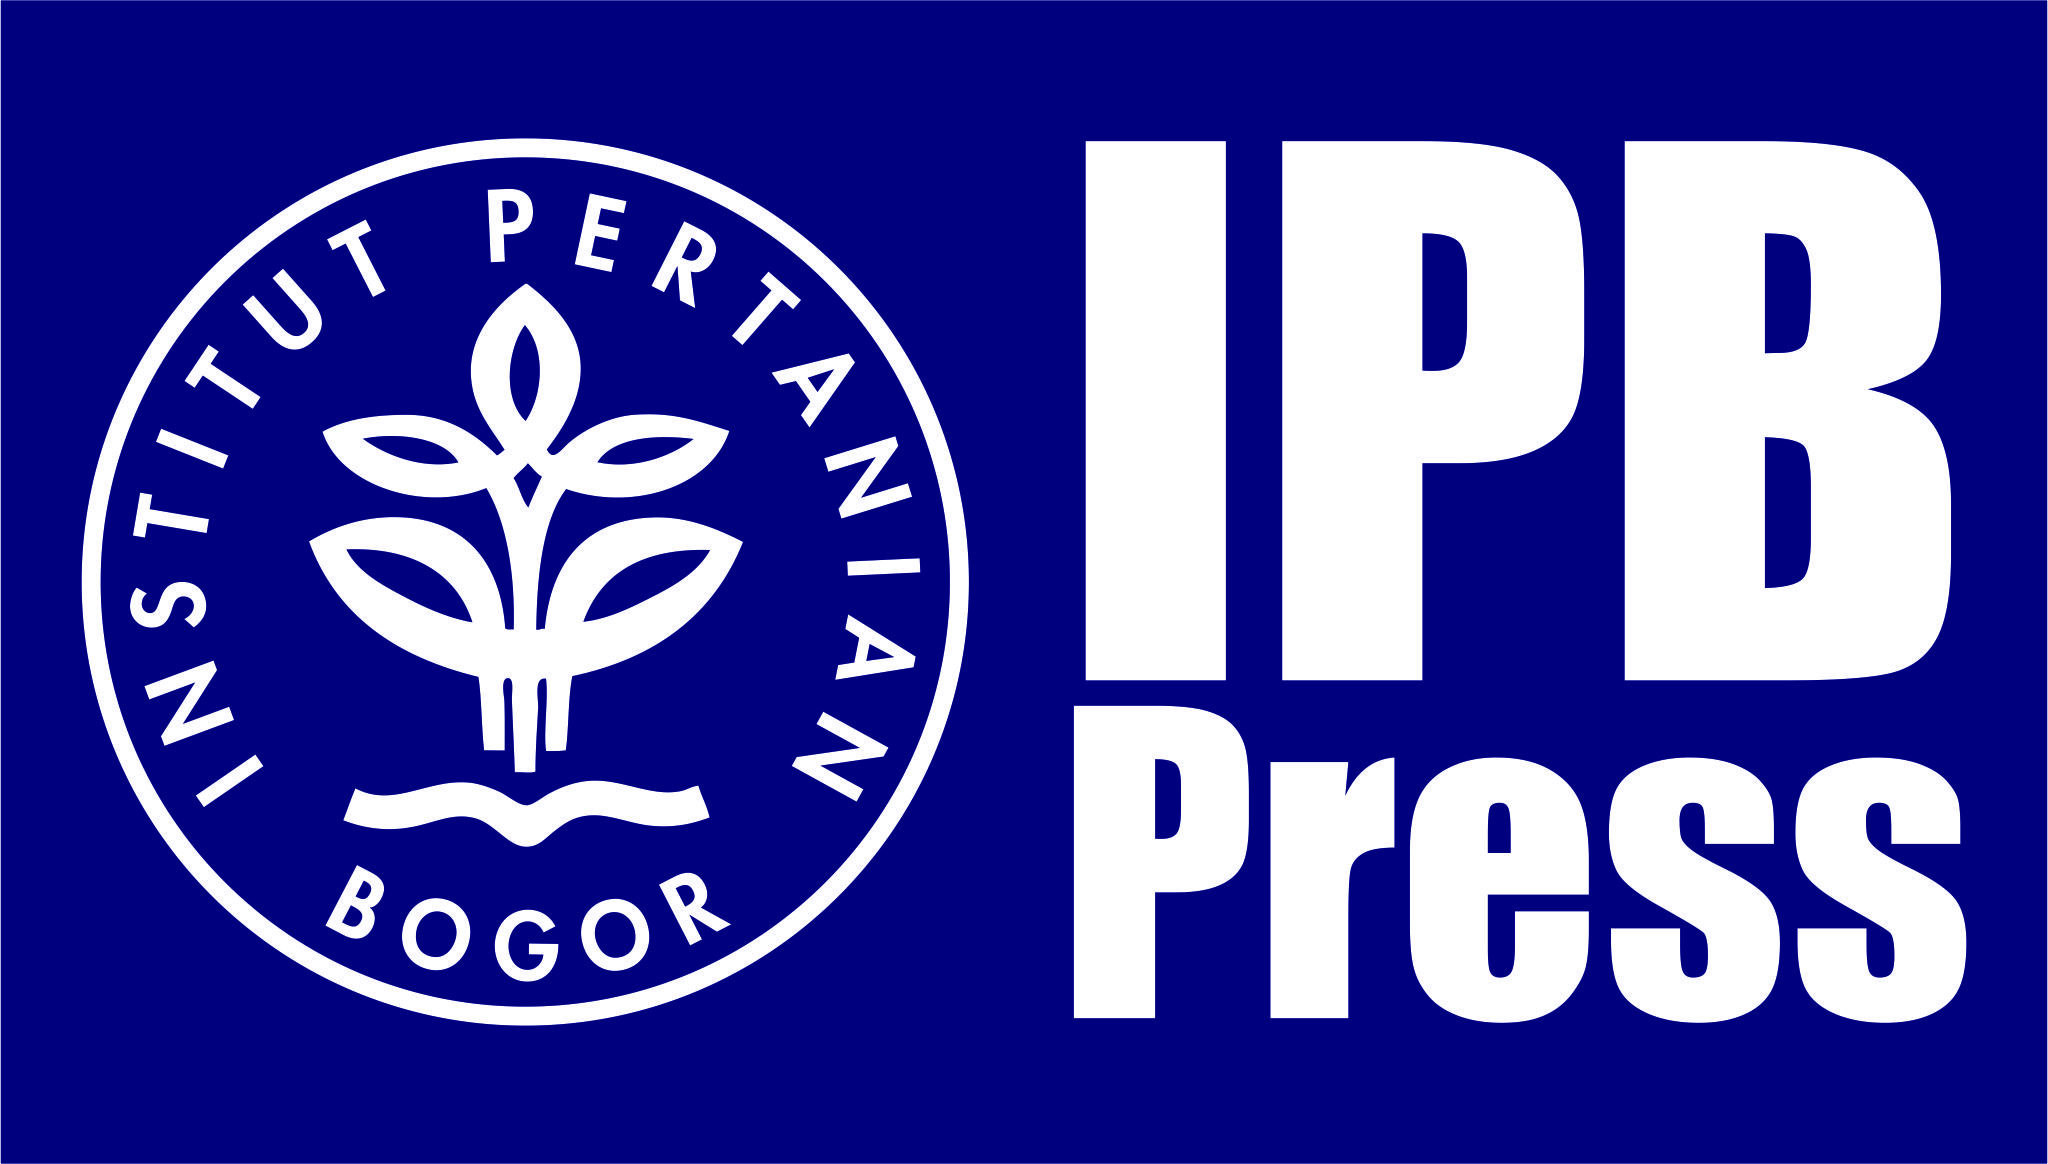 ipb logo